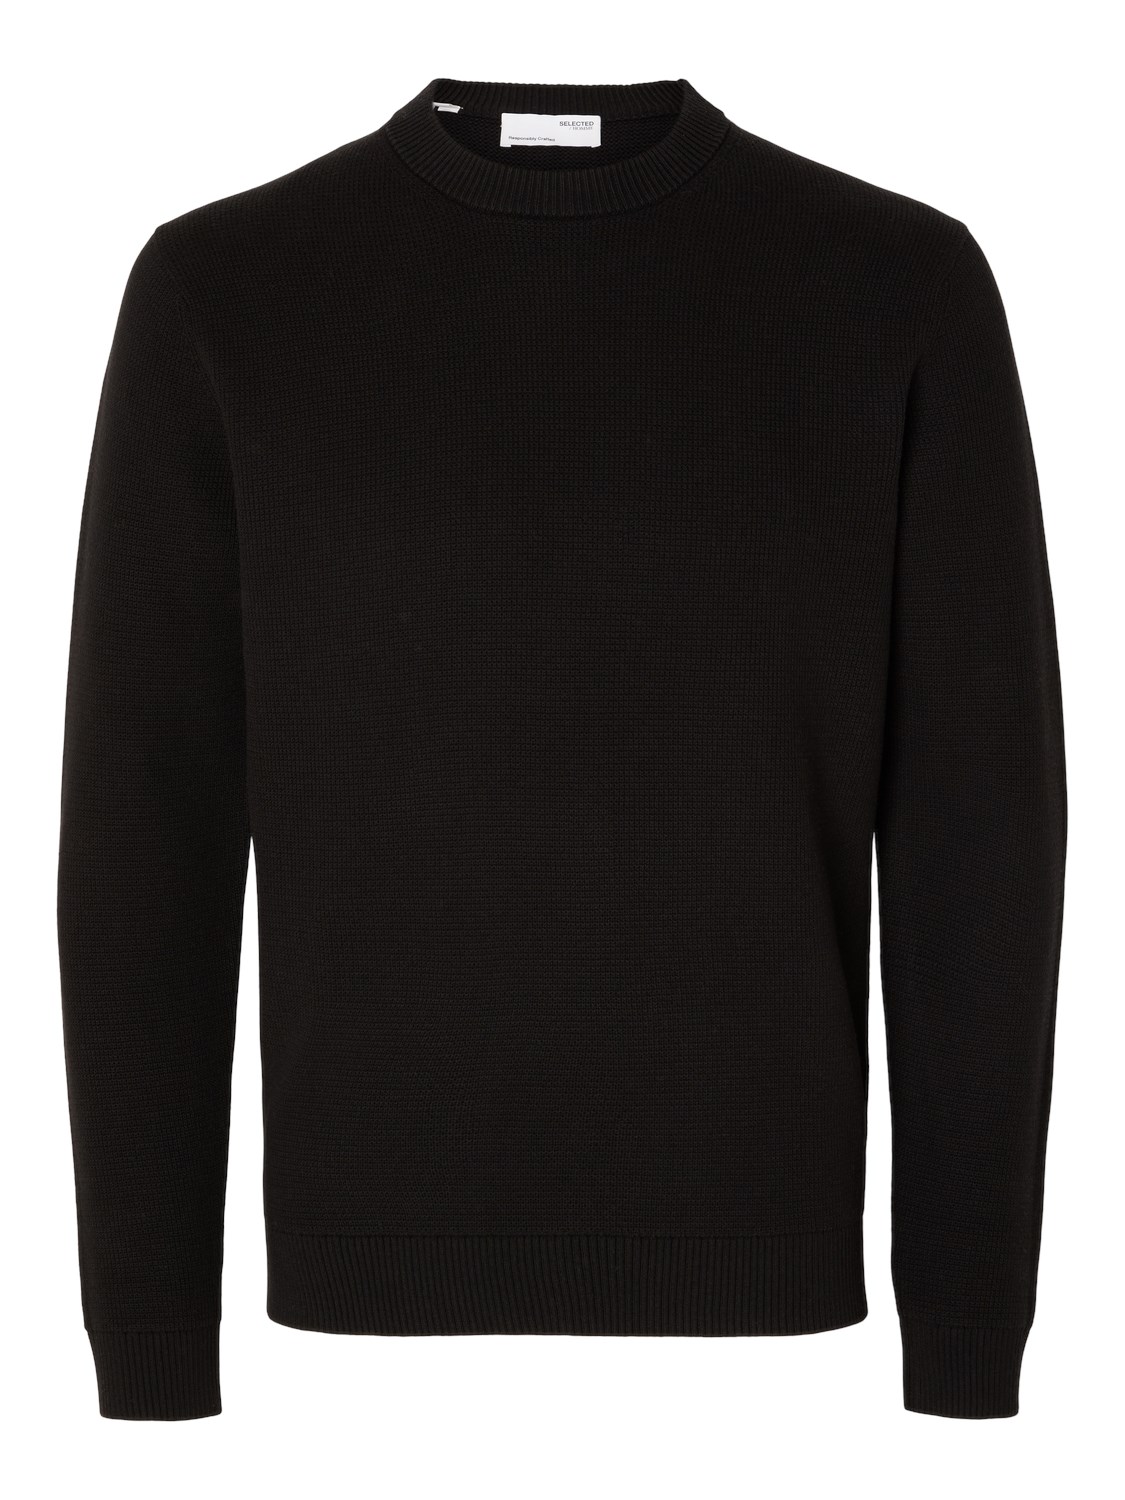 Пуловер SELECTED HOMME SLHDANE, черный пуловер selected homme slhvince коричневый